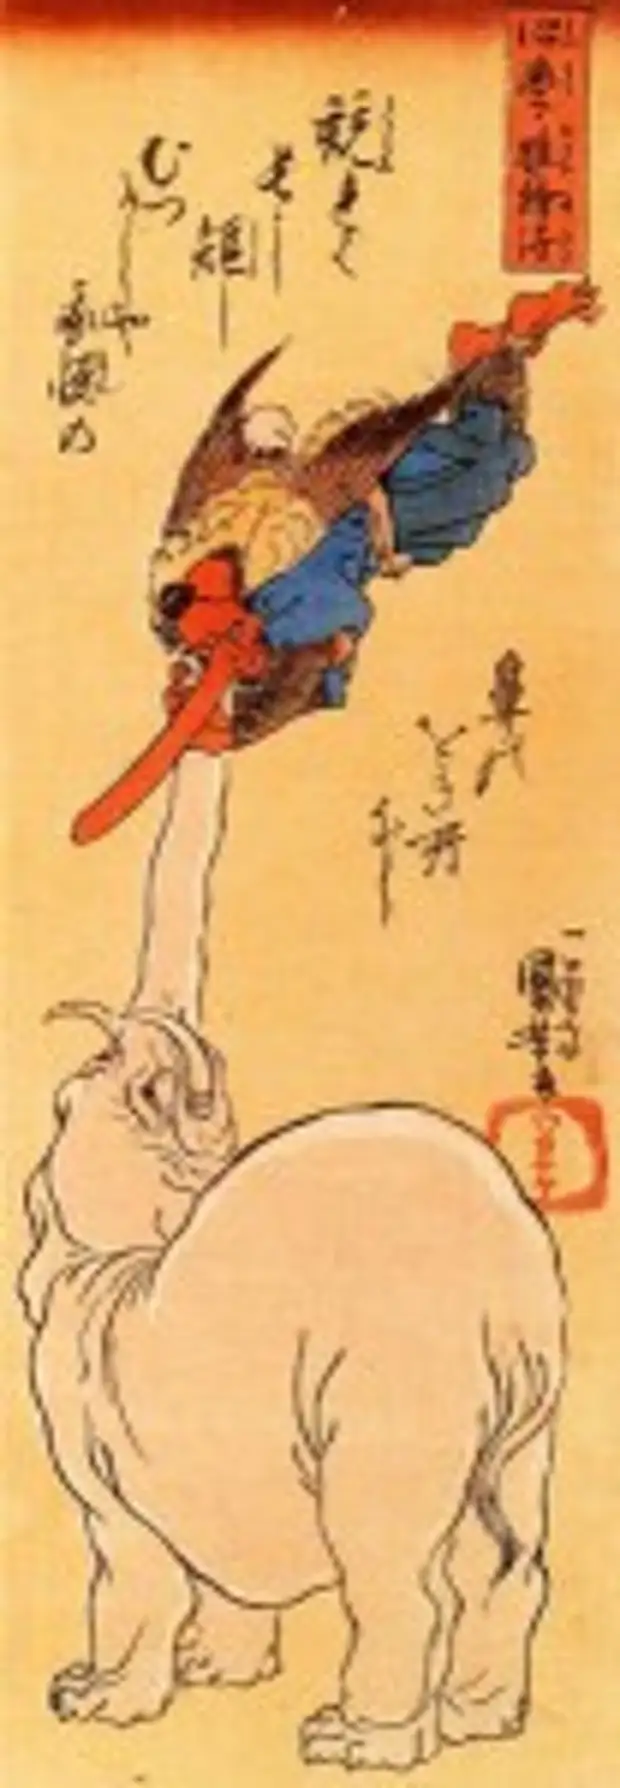 Слон ловит тэнгу (Утагава Куниёси, 19 век).